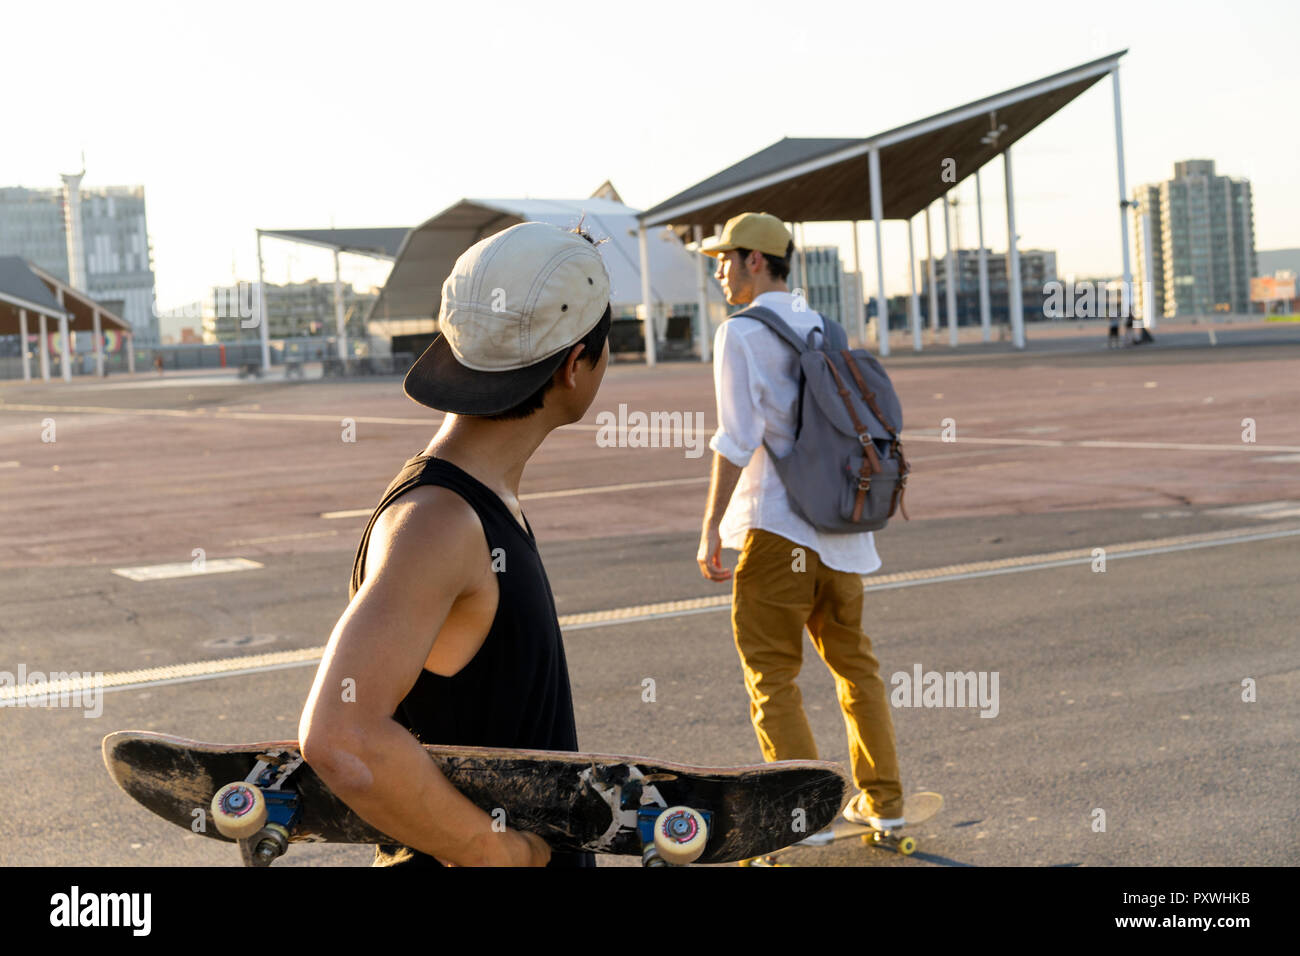 Zwei junge Männer mit skateboards auf einem Parkdeck Stockfoto